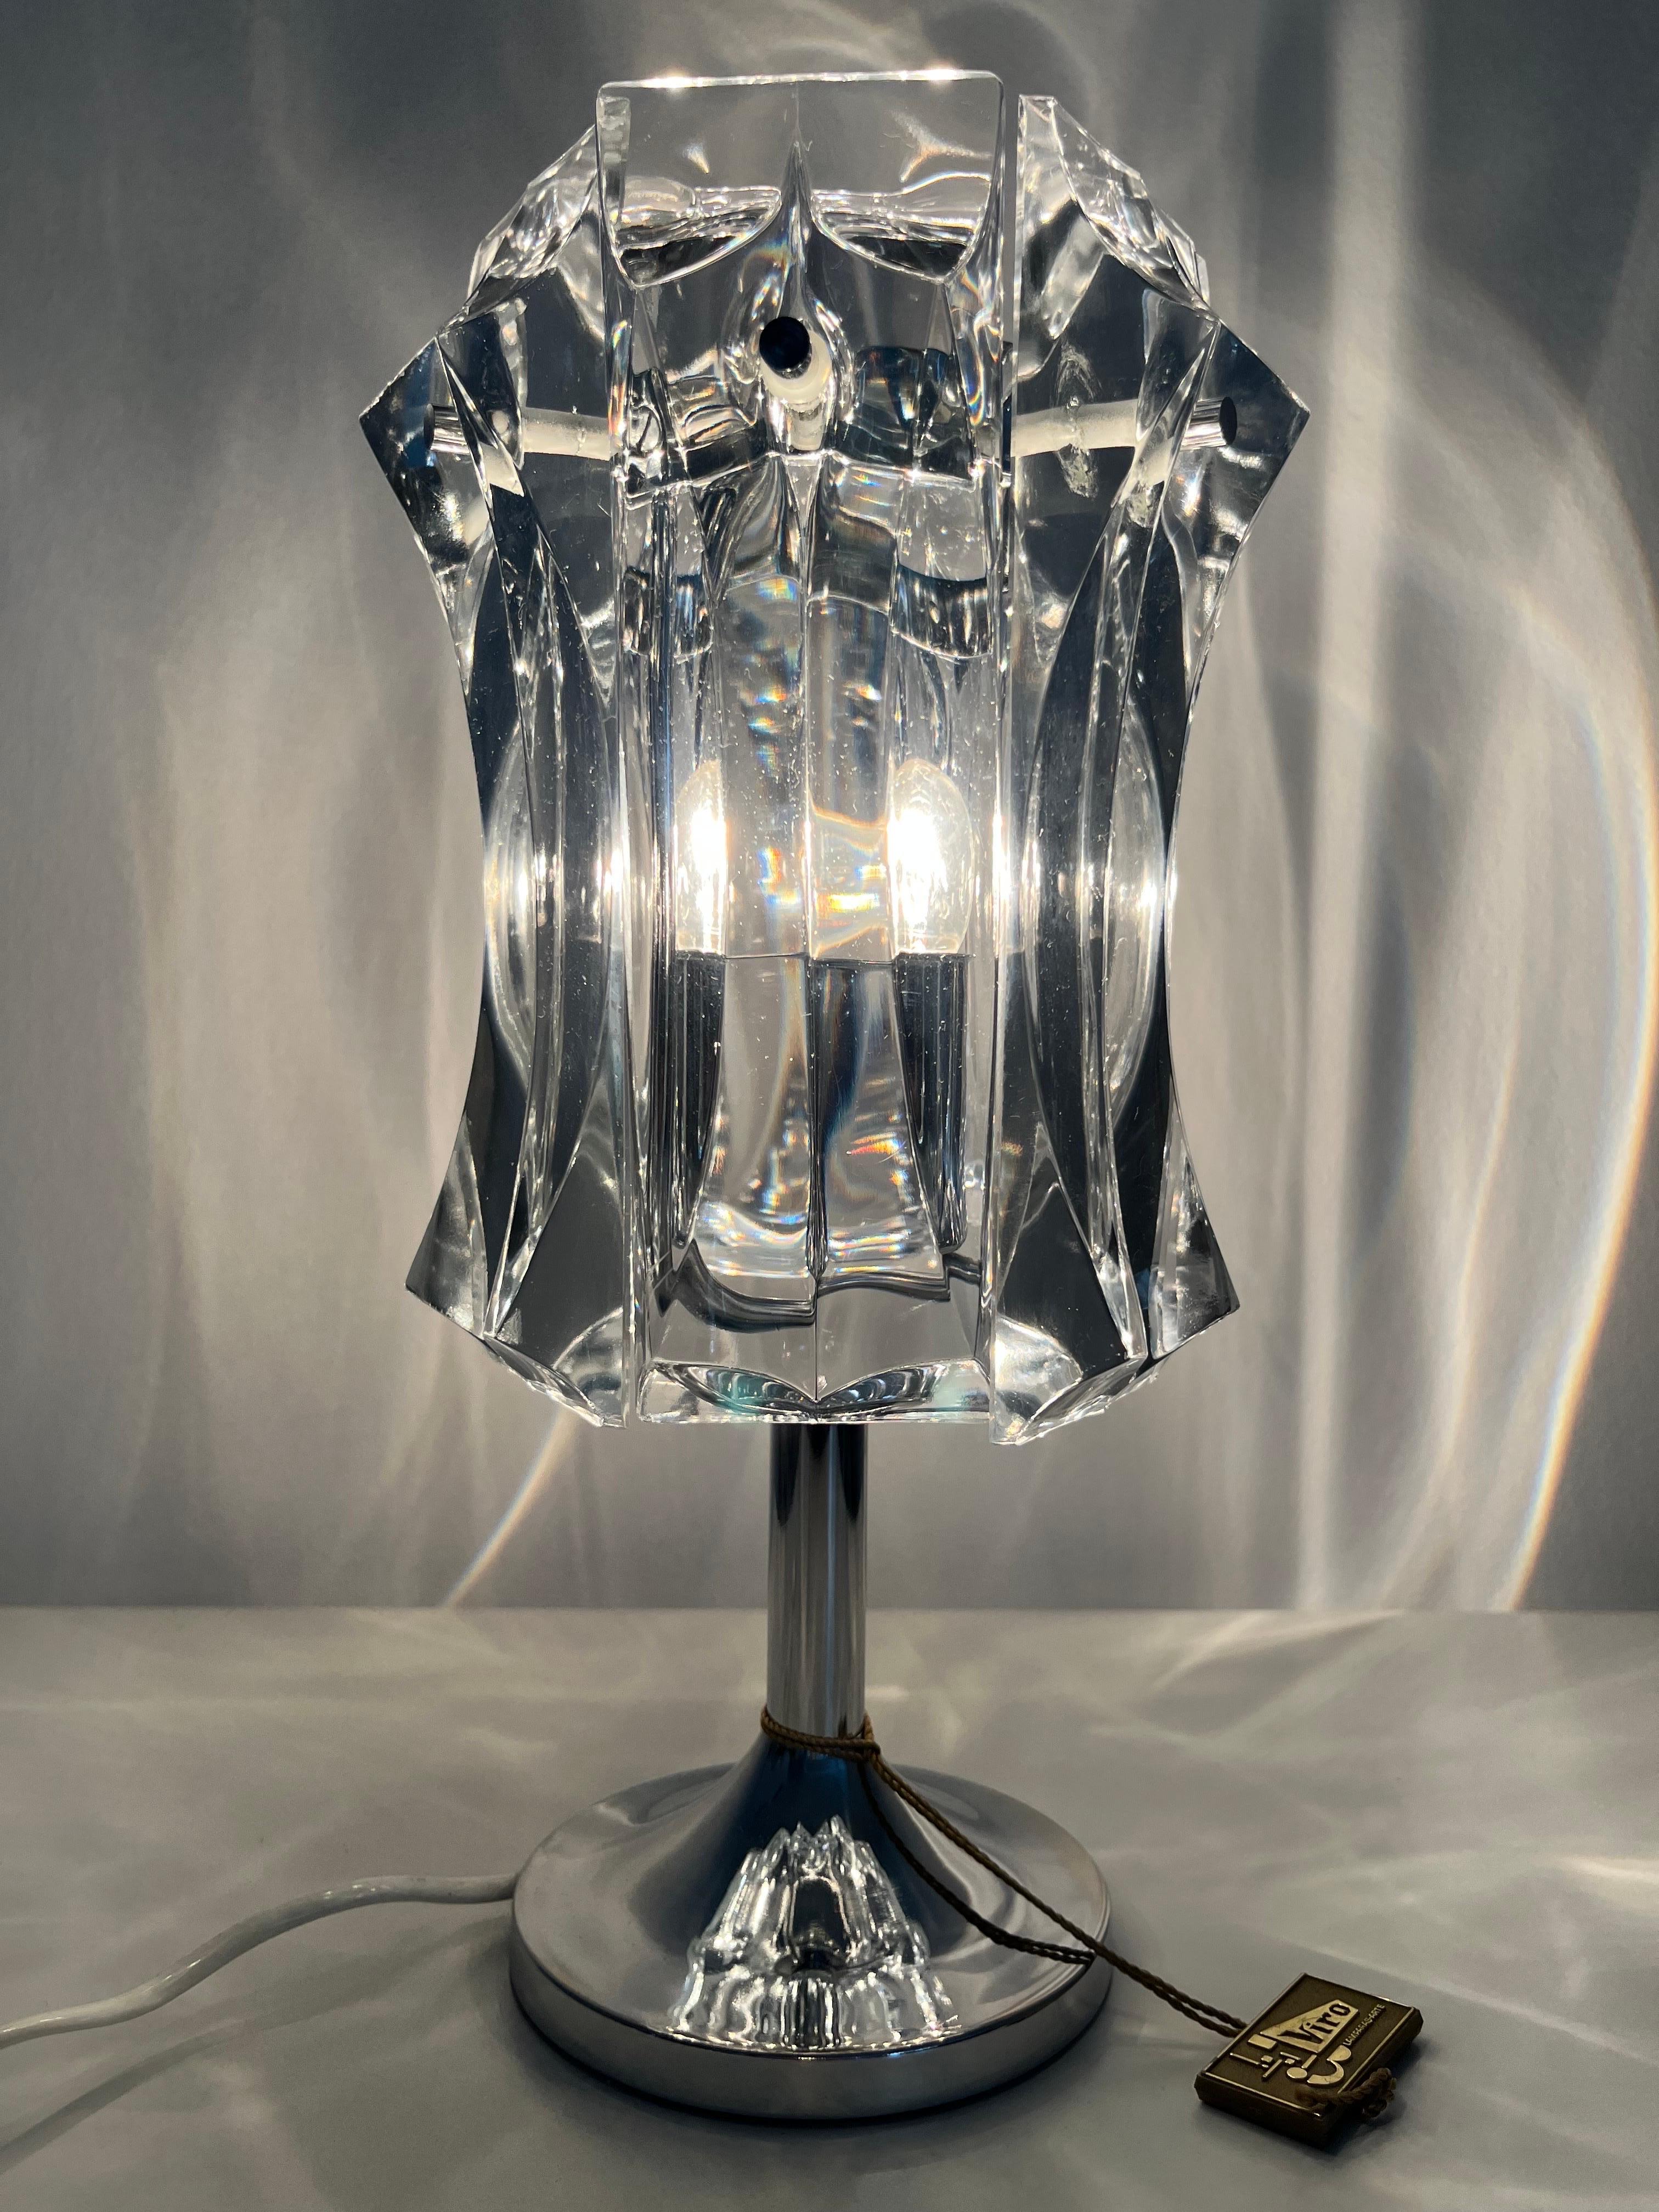 German Midcentury Crystals Chromed Metal Table Lamp by Kinkeldey, 1970s For Sale 1